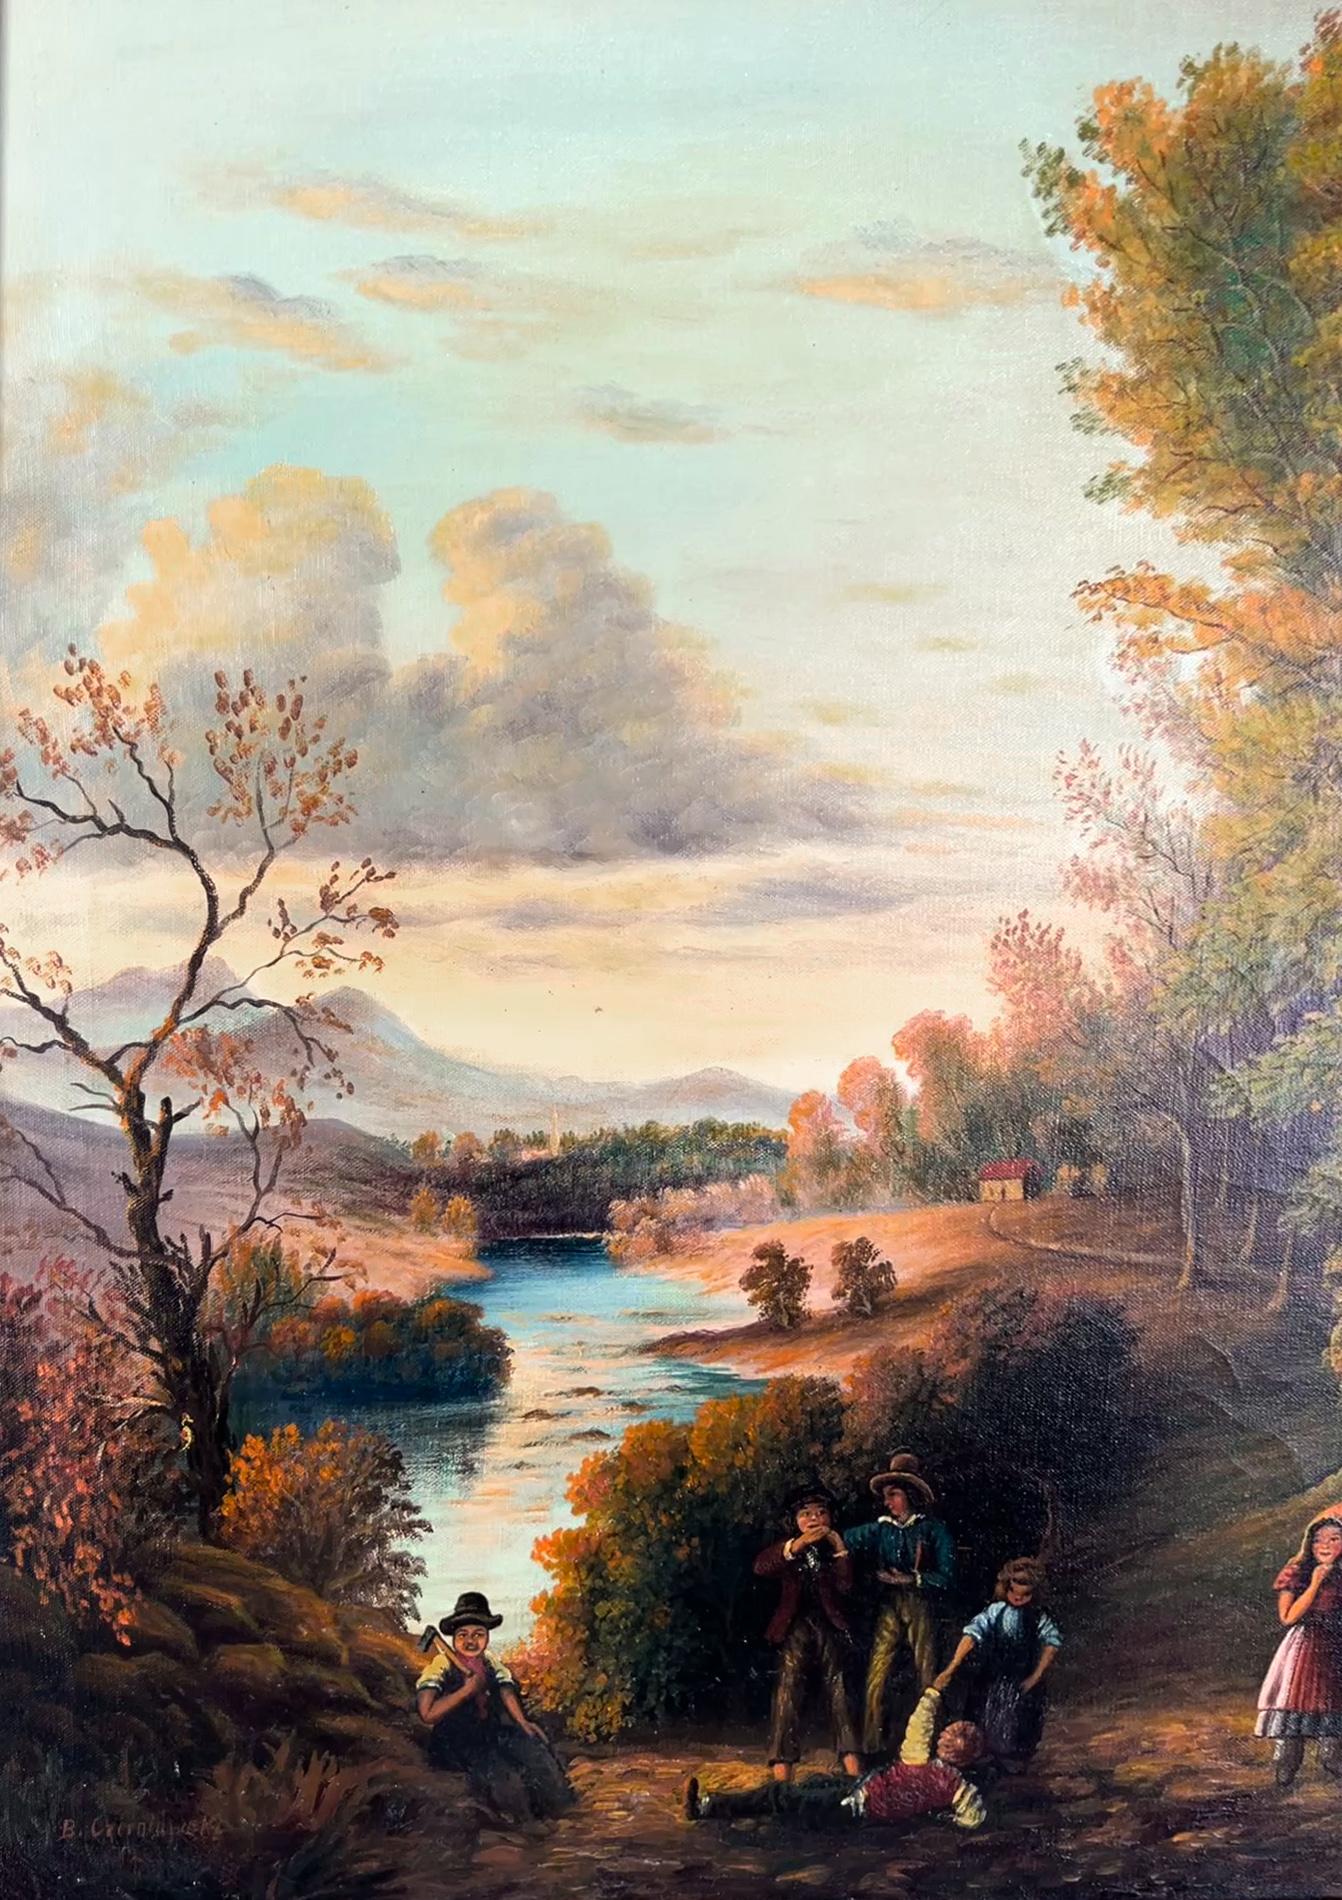 Abendzeit New York Hudson River School-Szene Öl auf Leinwand Verschnörkelter Rahmen, Öl auf Leinwand (Amerikanischer Impressionismus), Painting, von B. Czerniawski